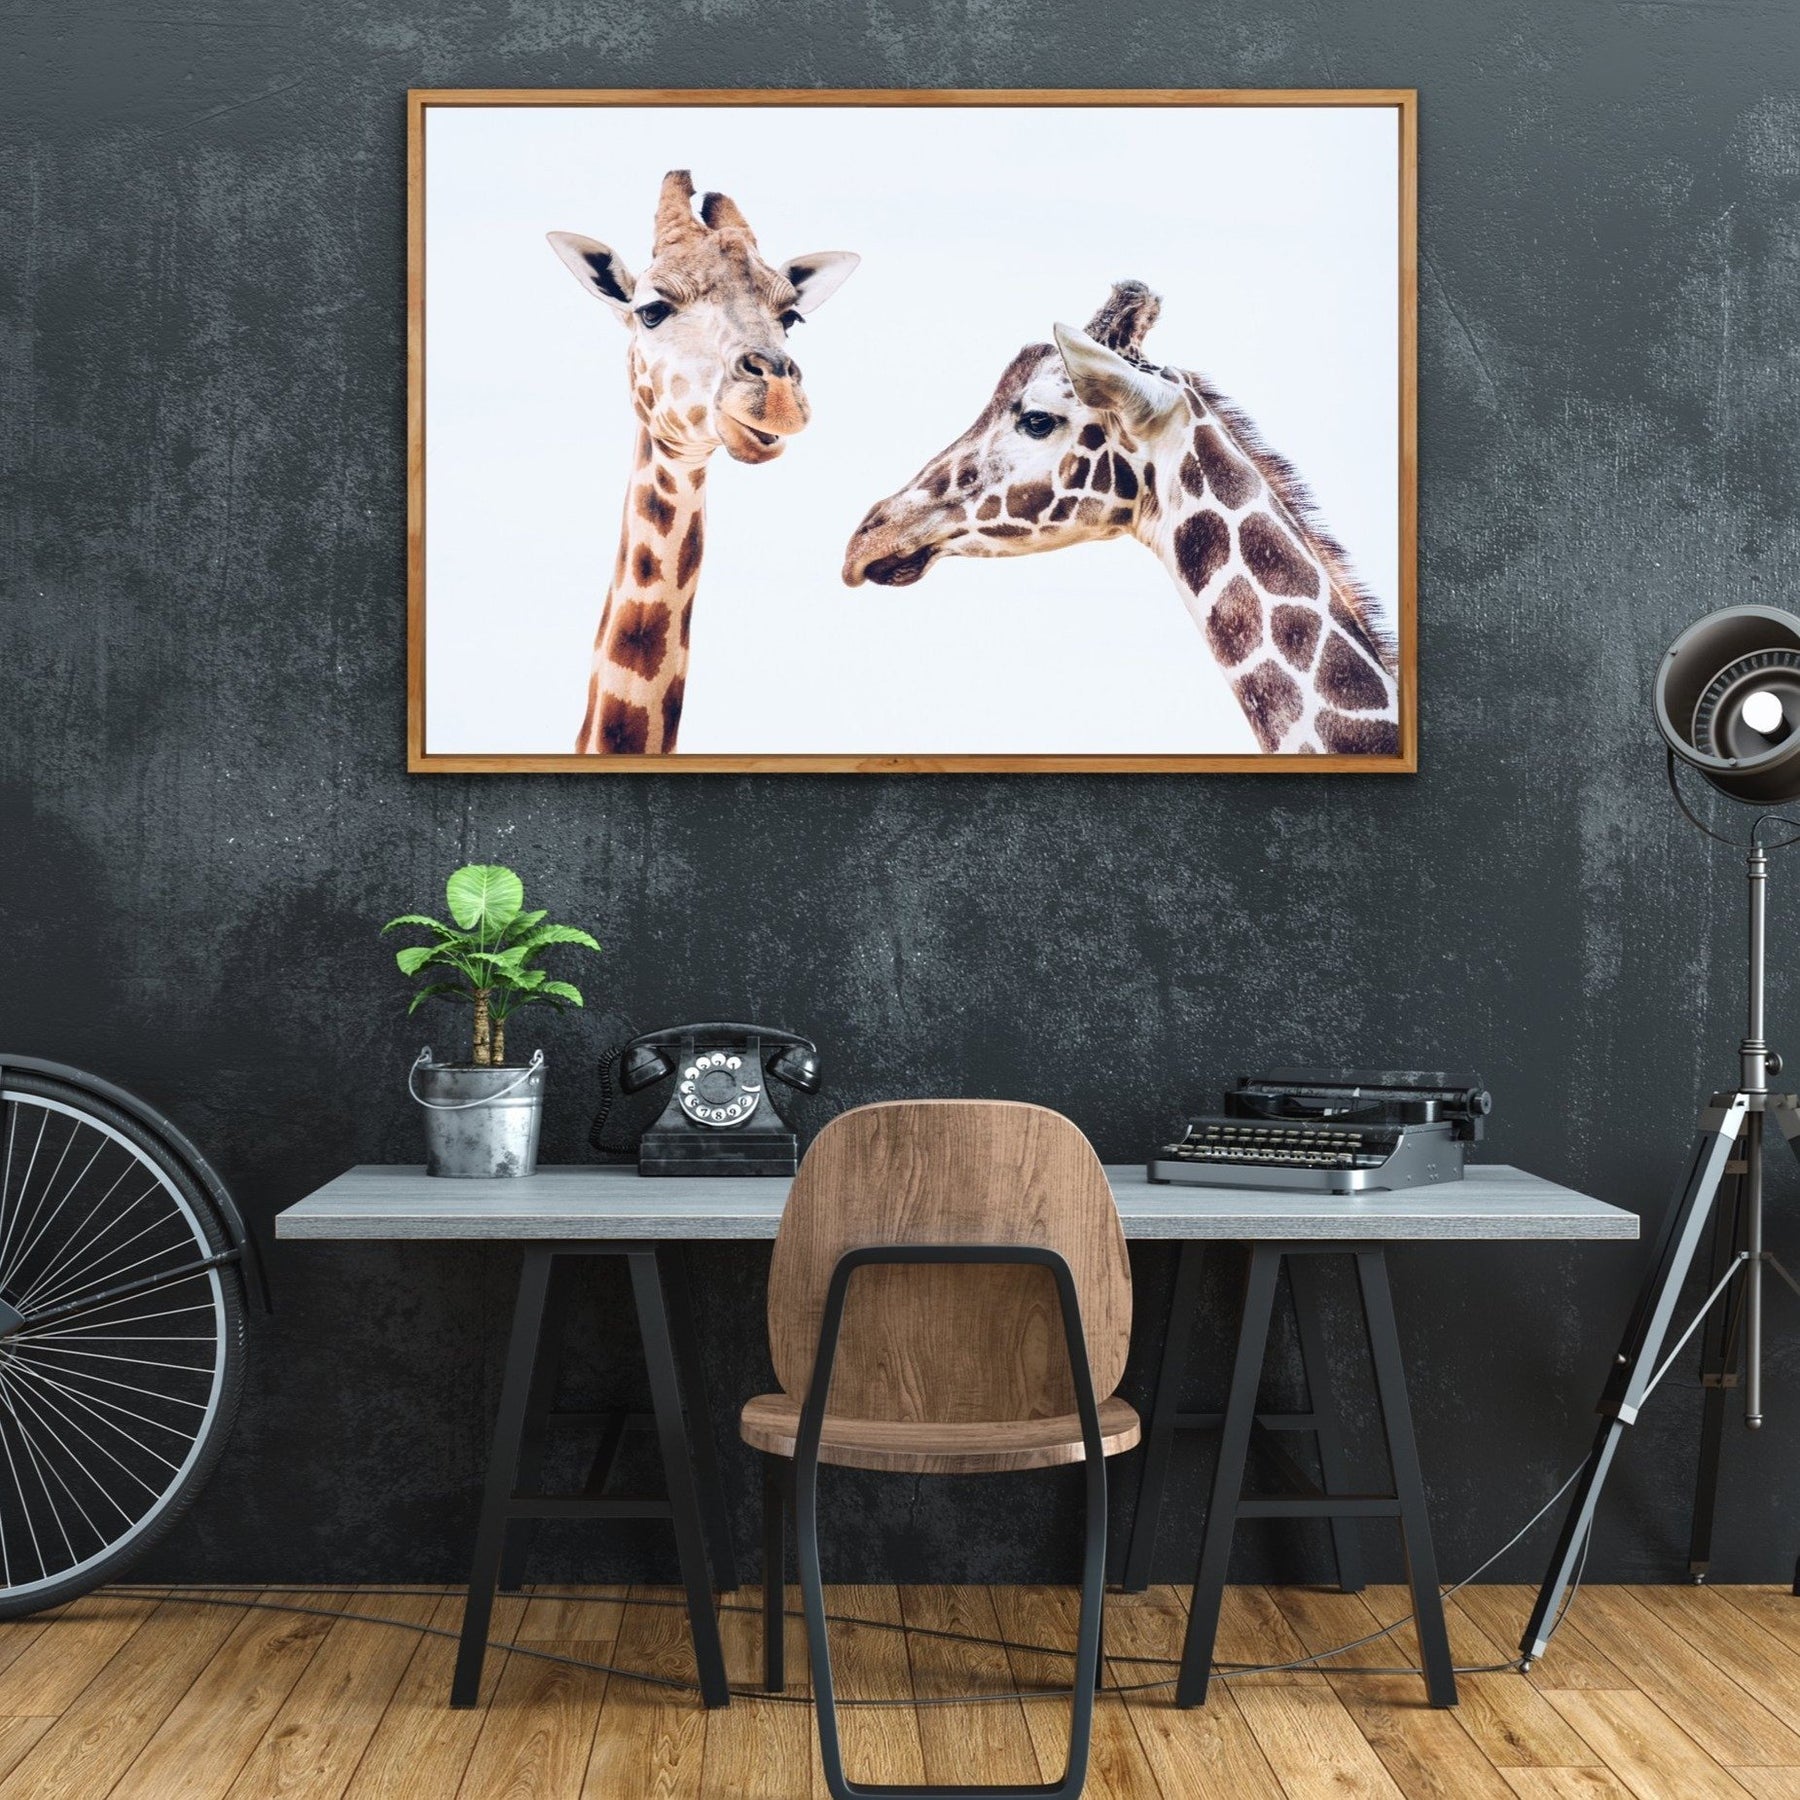 Giraffe Pair - Original Wall Art Print on Canvas Featuring Two Giraffes ...